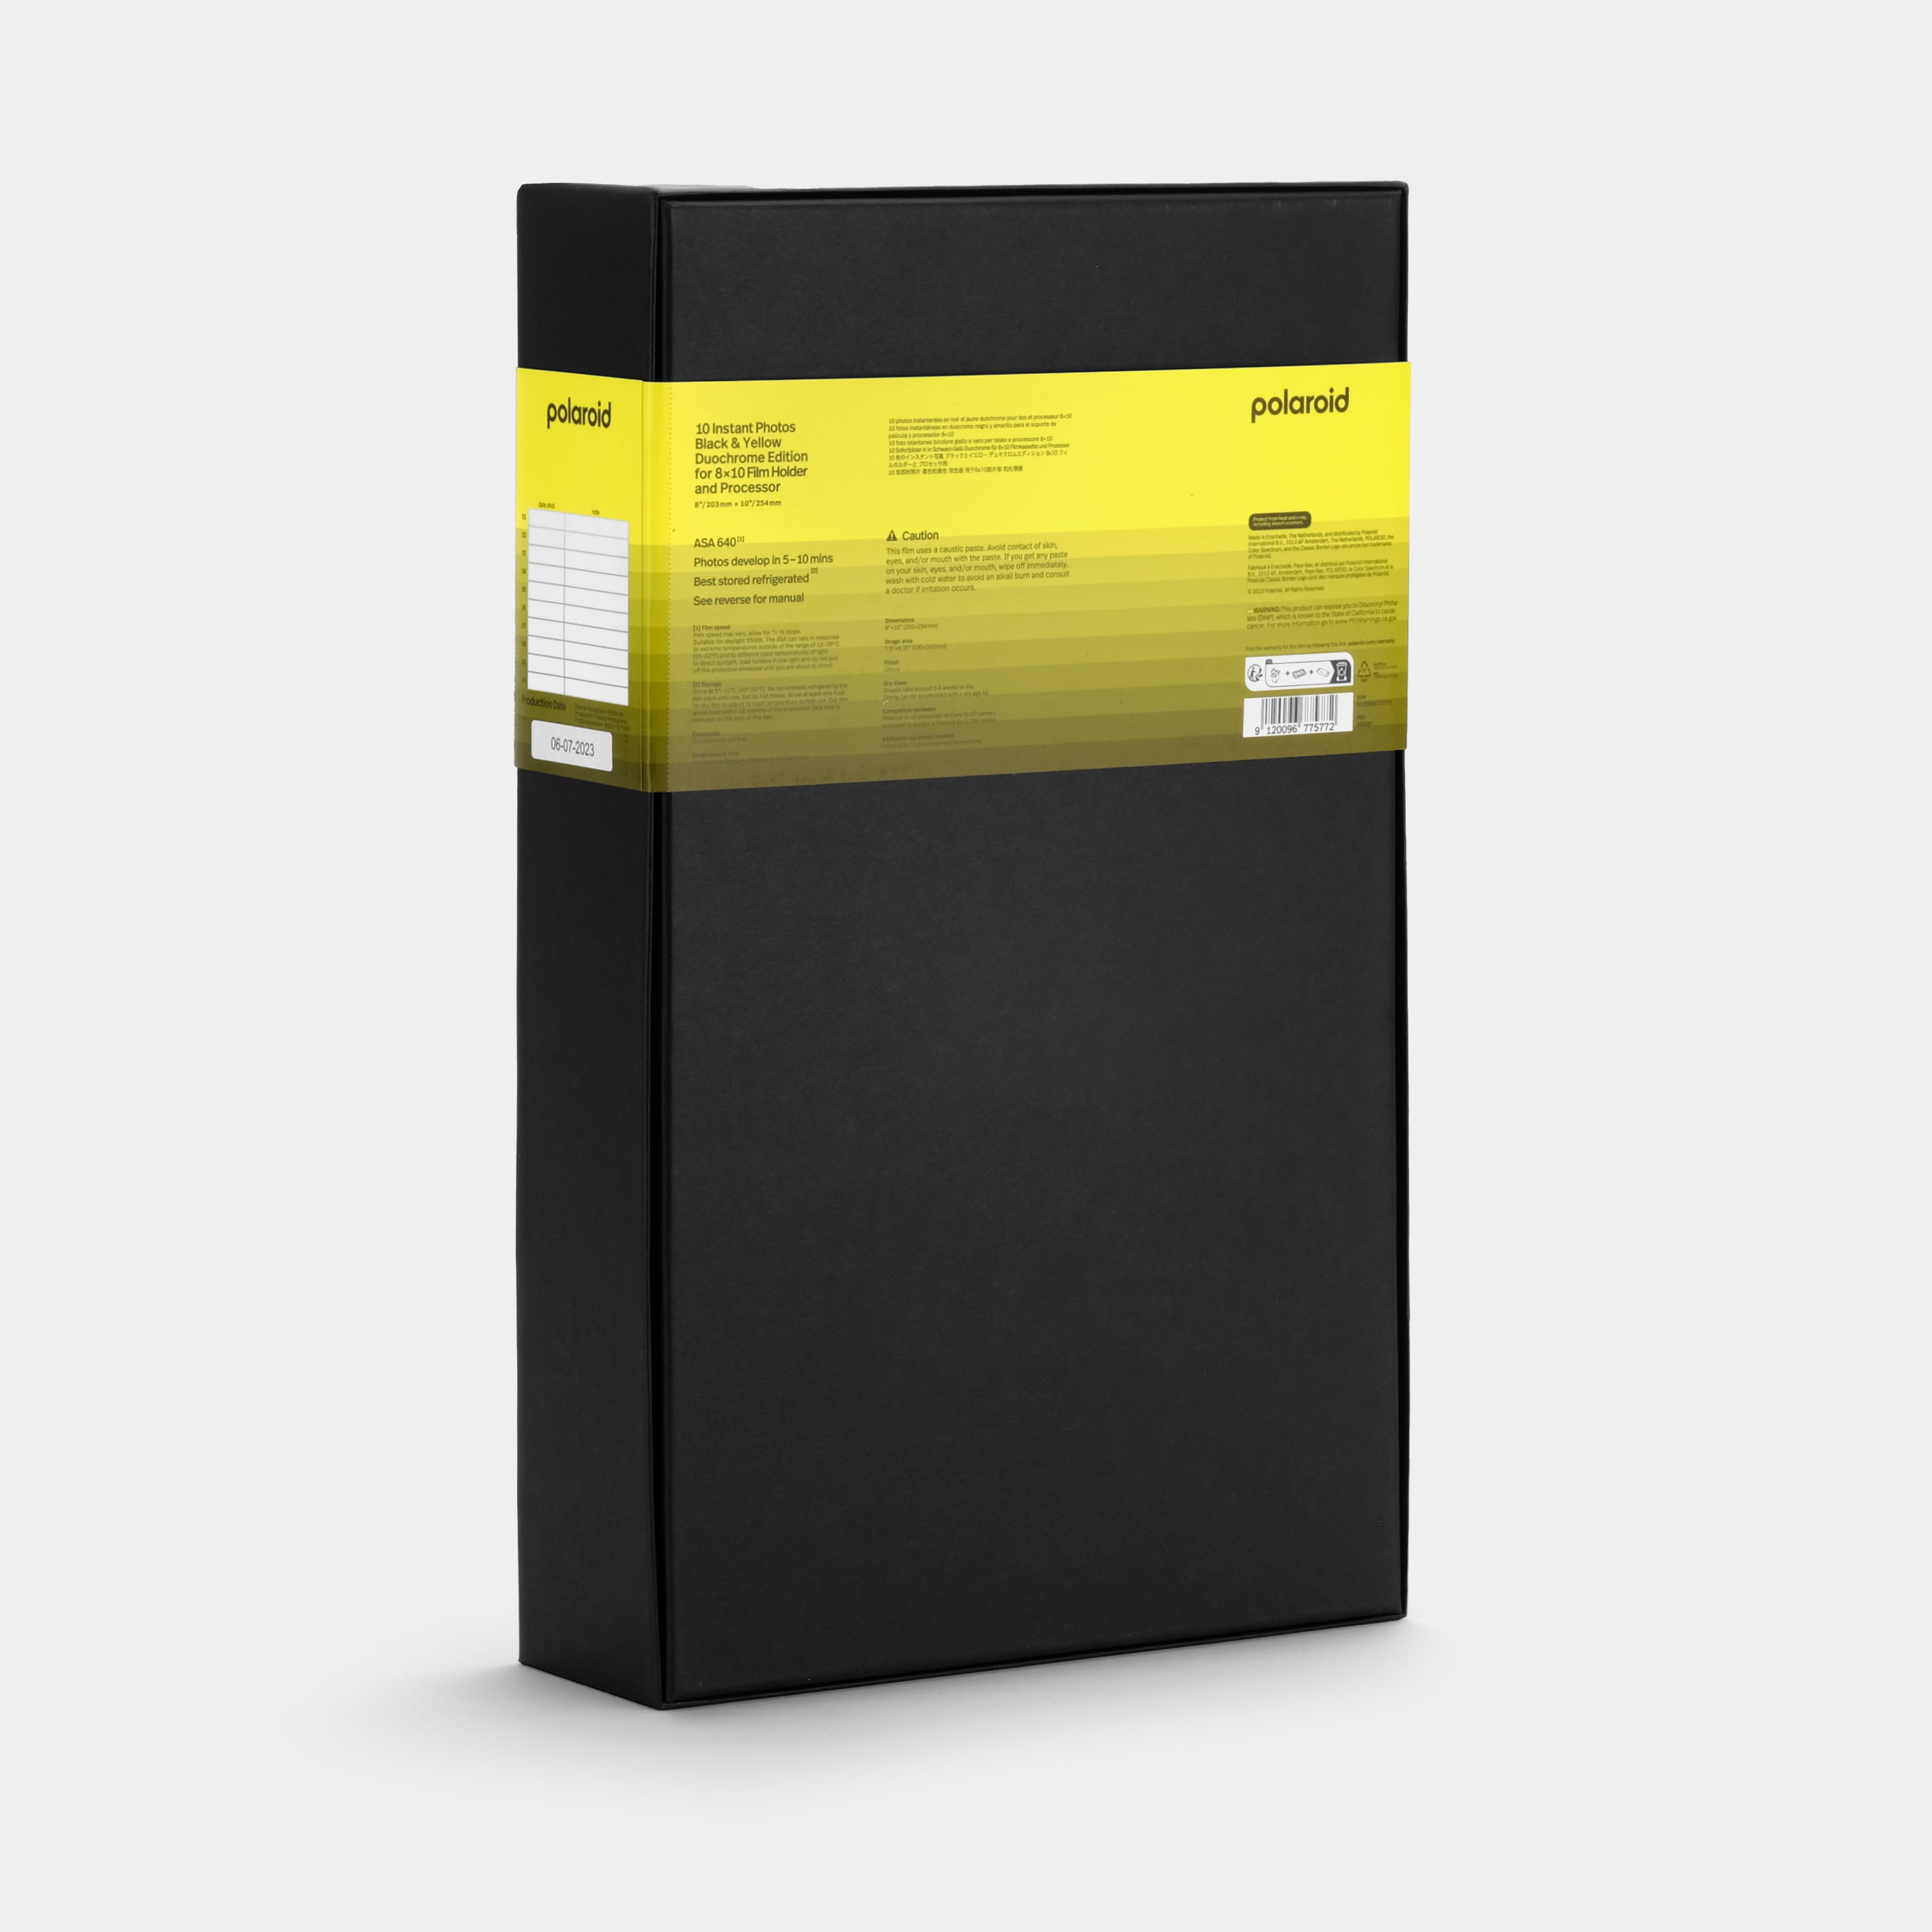 Polaroid Duochrome Film for 8 x 10 - Black & Yellow Edition